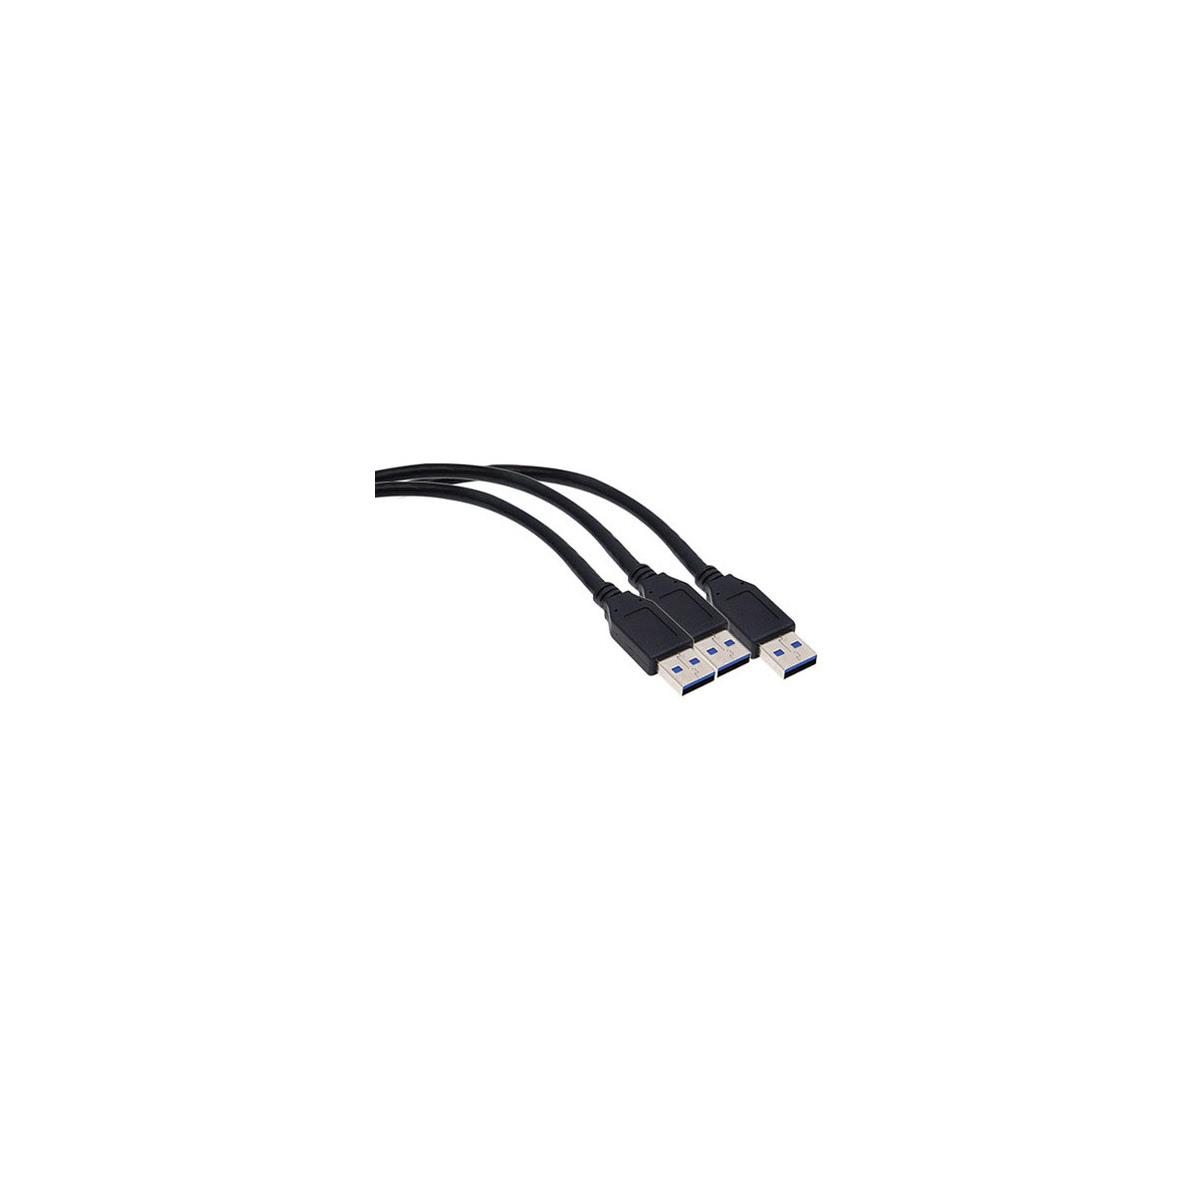 Image of Sonnet xMac mini Server USB 3.0 Cable Kit